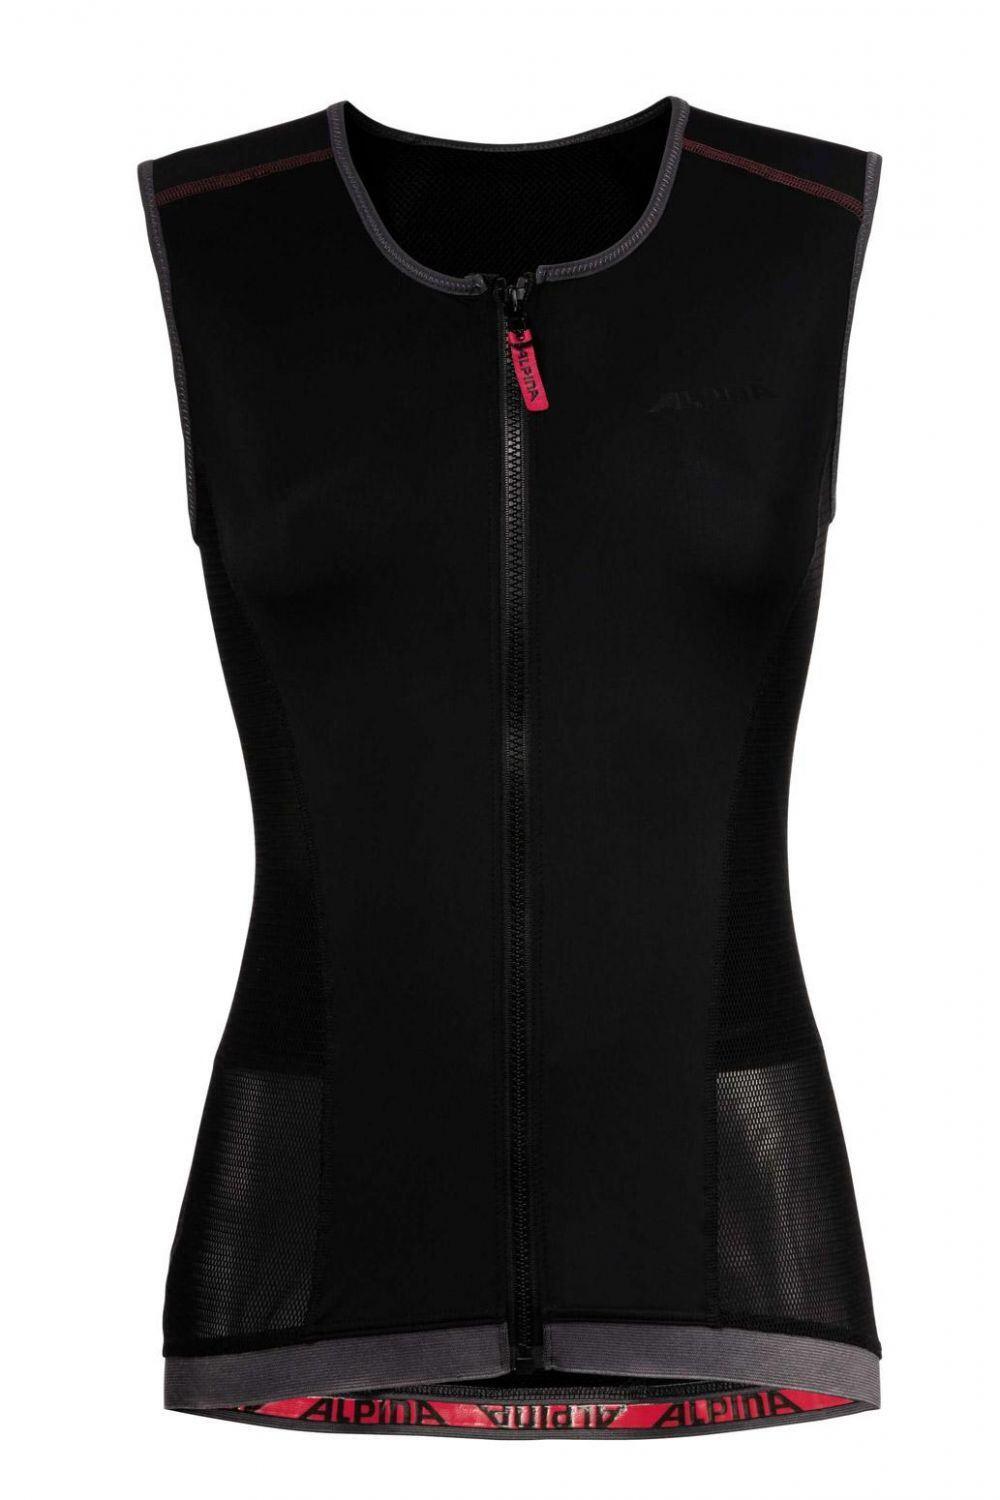 Alpina Jacket Soft Protector 3.0 Women Vest (Größe: XS = Körpergröße ca.